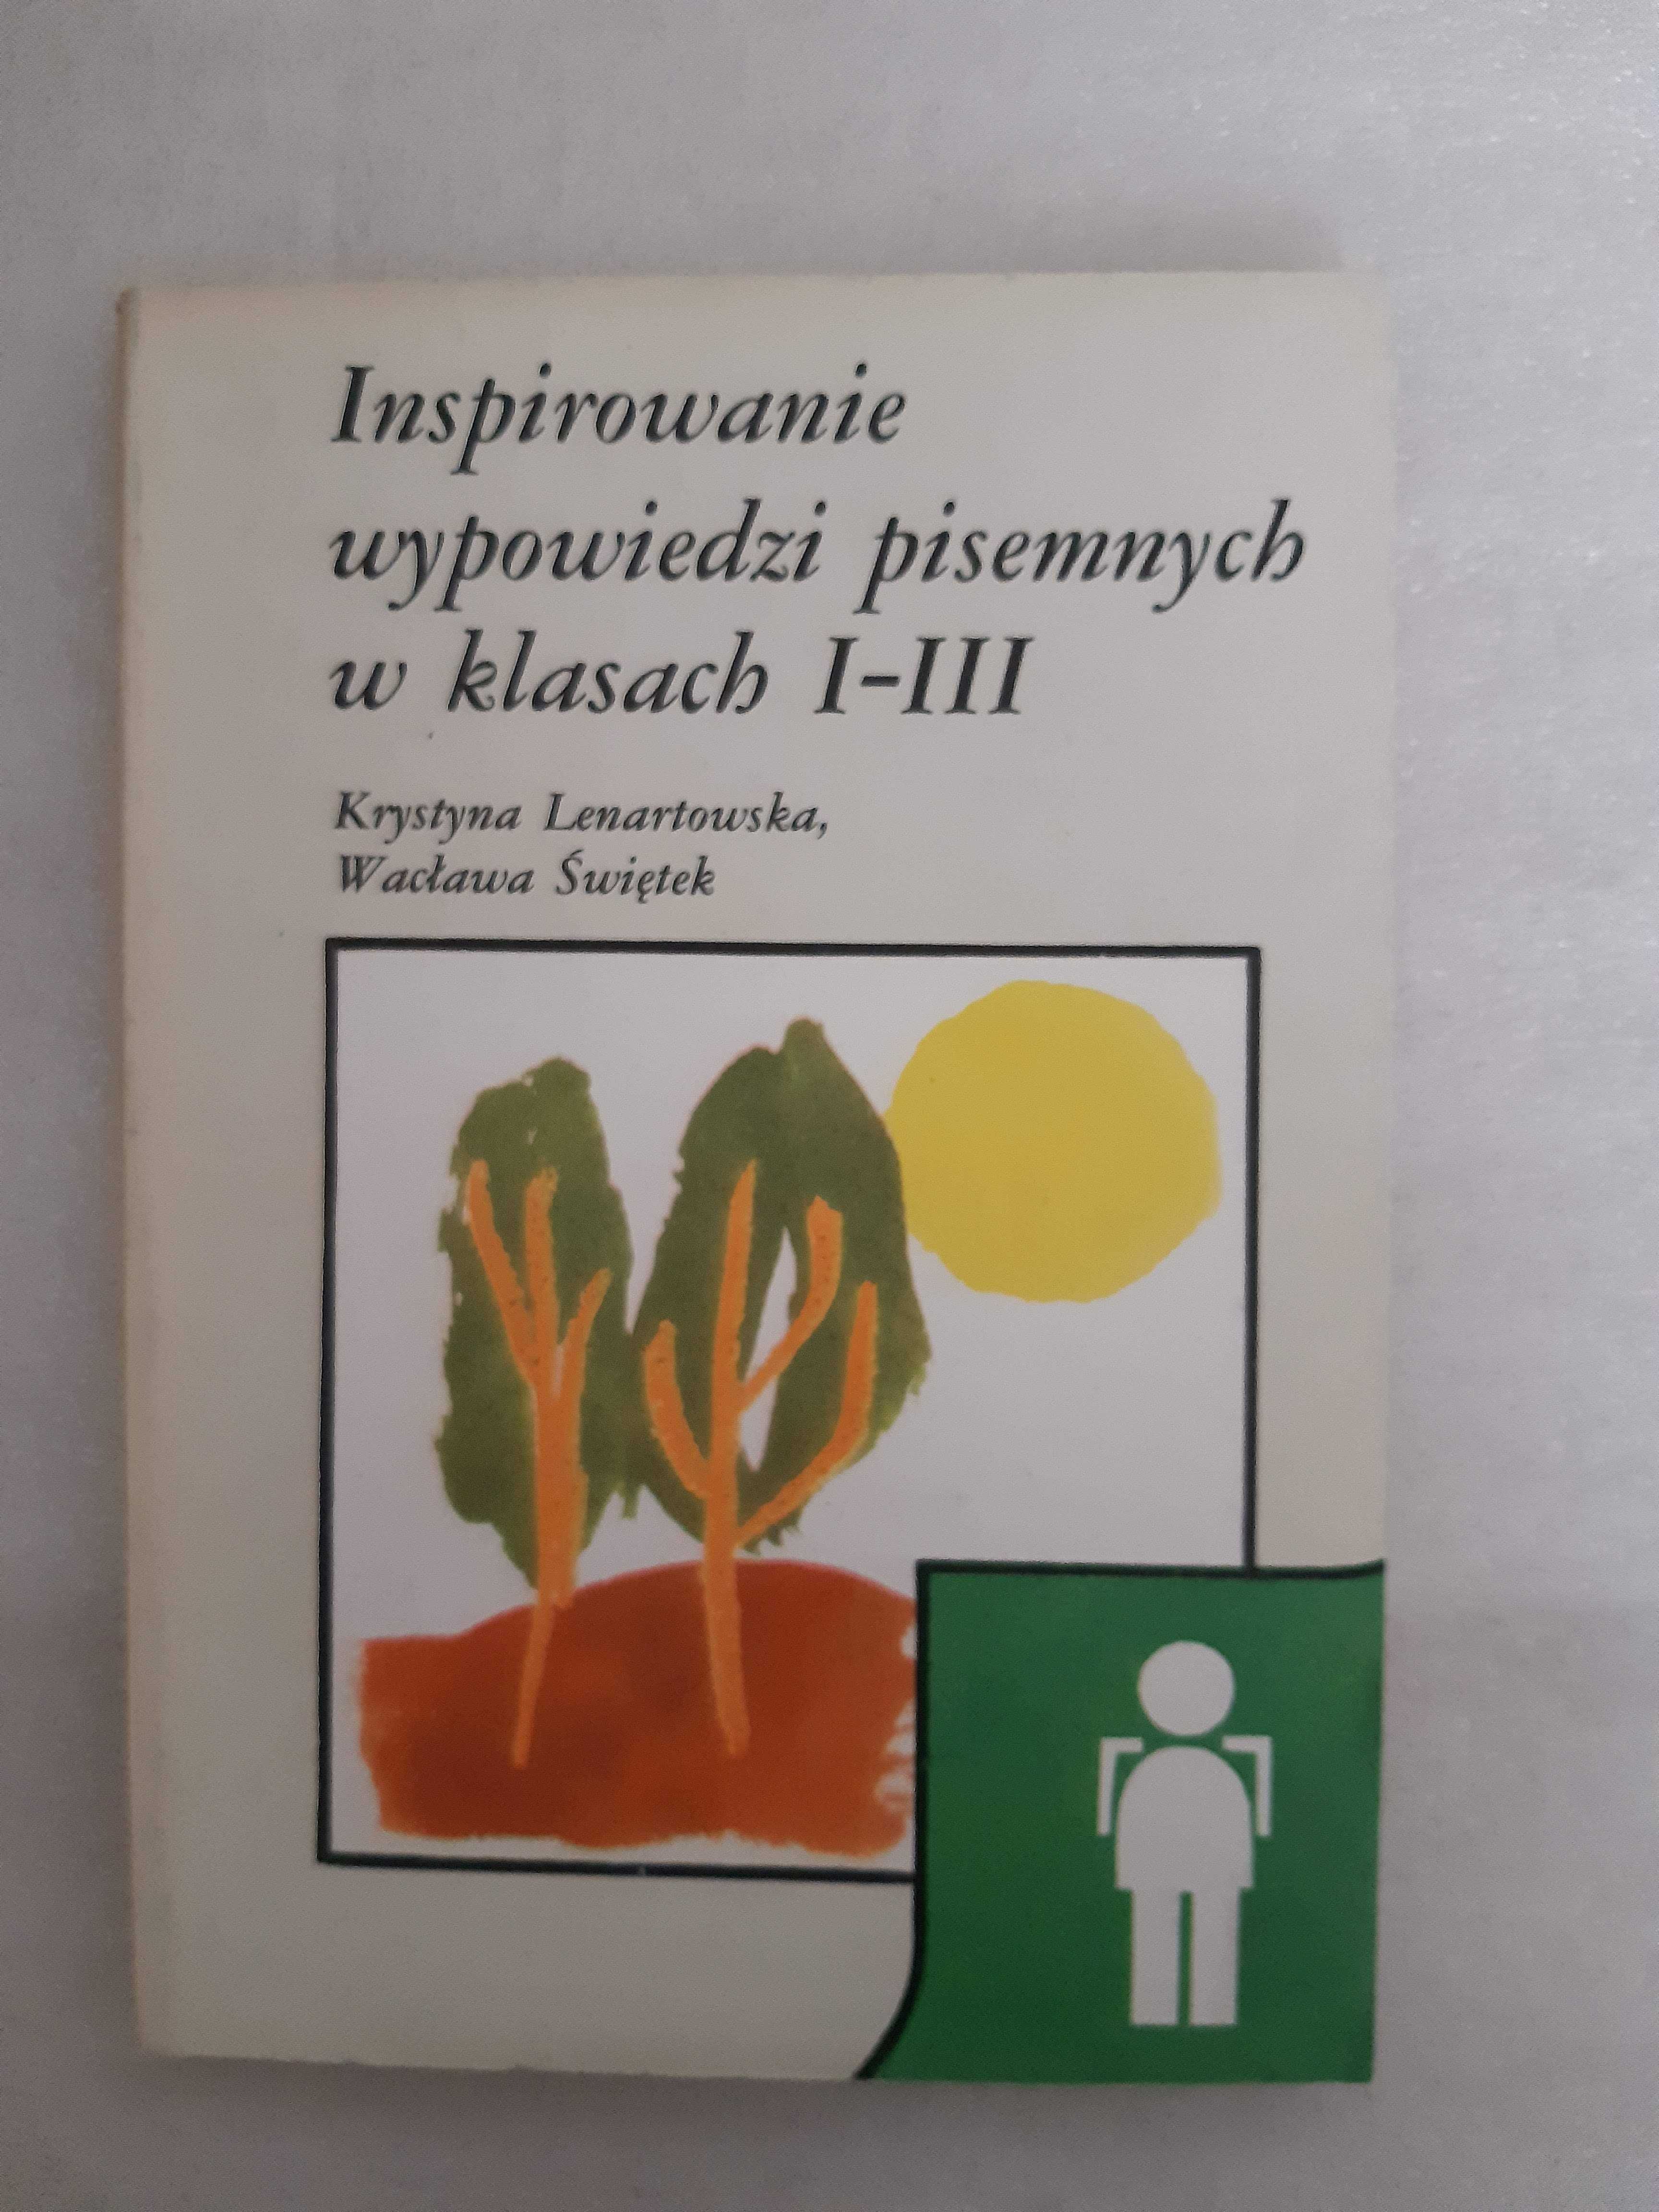 "Inspirowanie wypowiedzi pisemnych w klasach I-III" Lenartowska